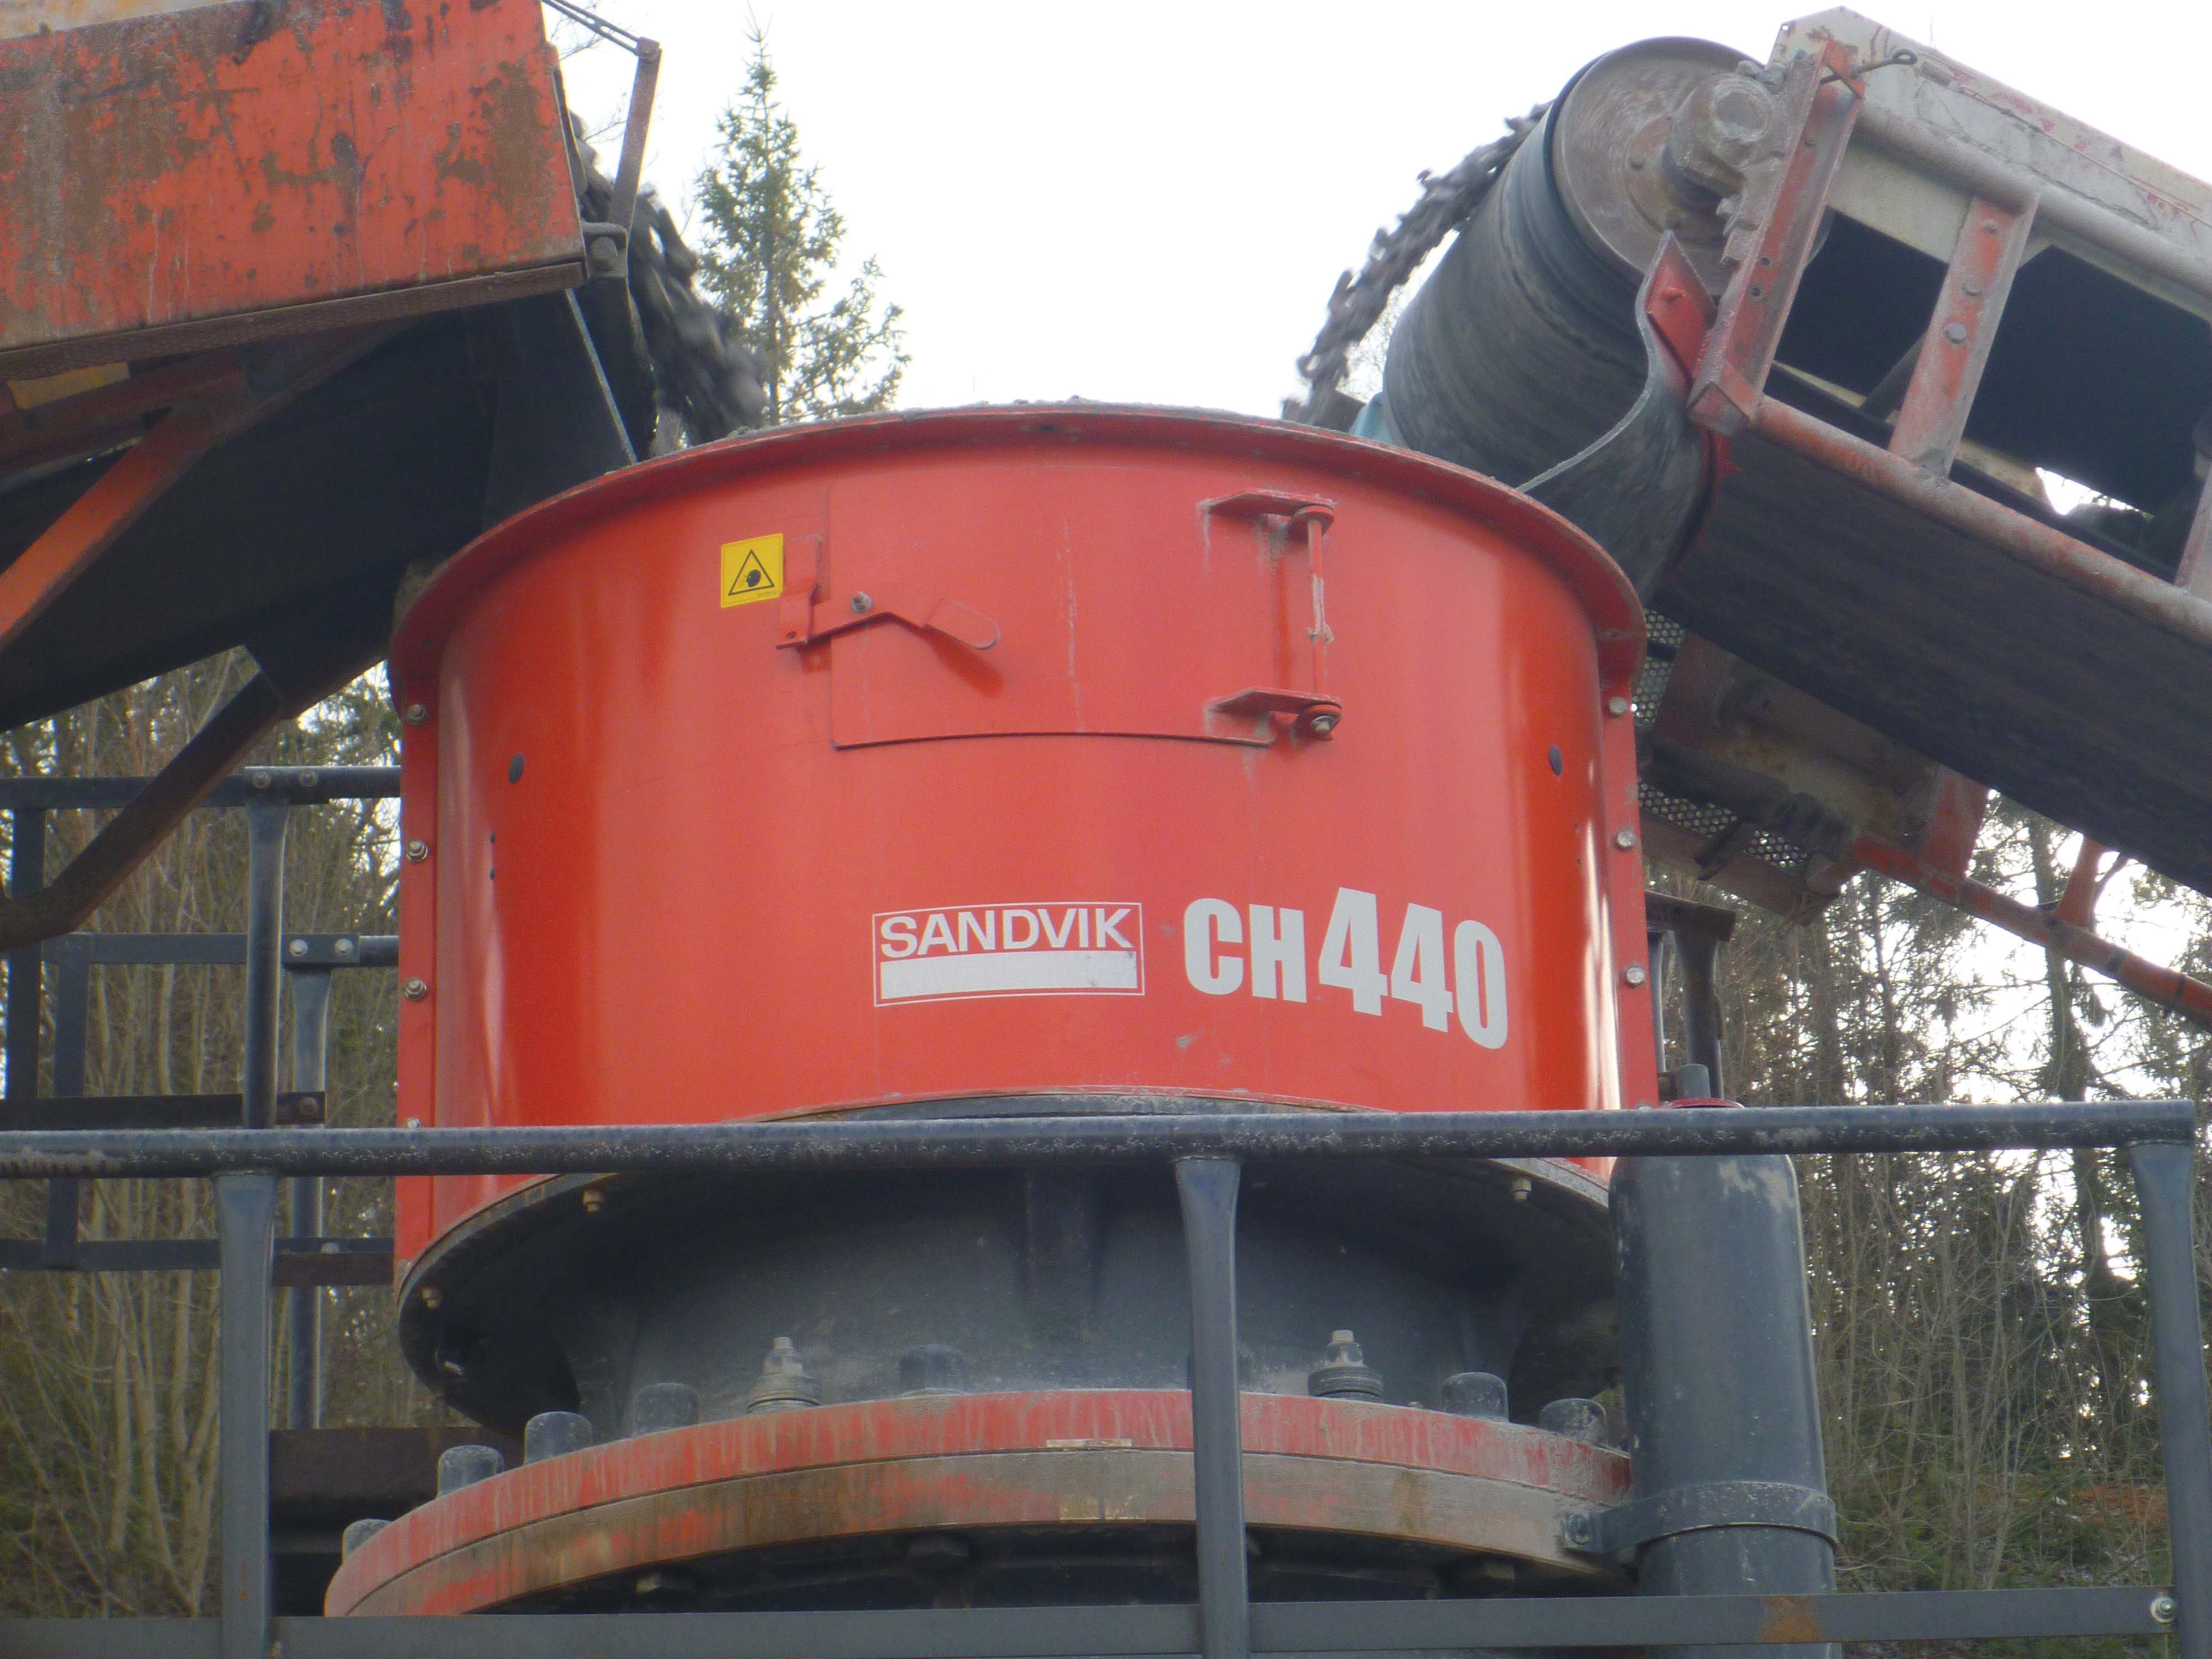 Sandvik CH440 cone crusher